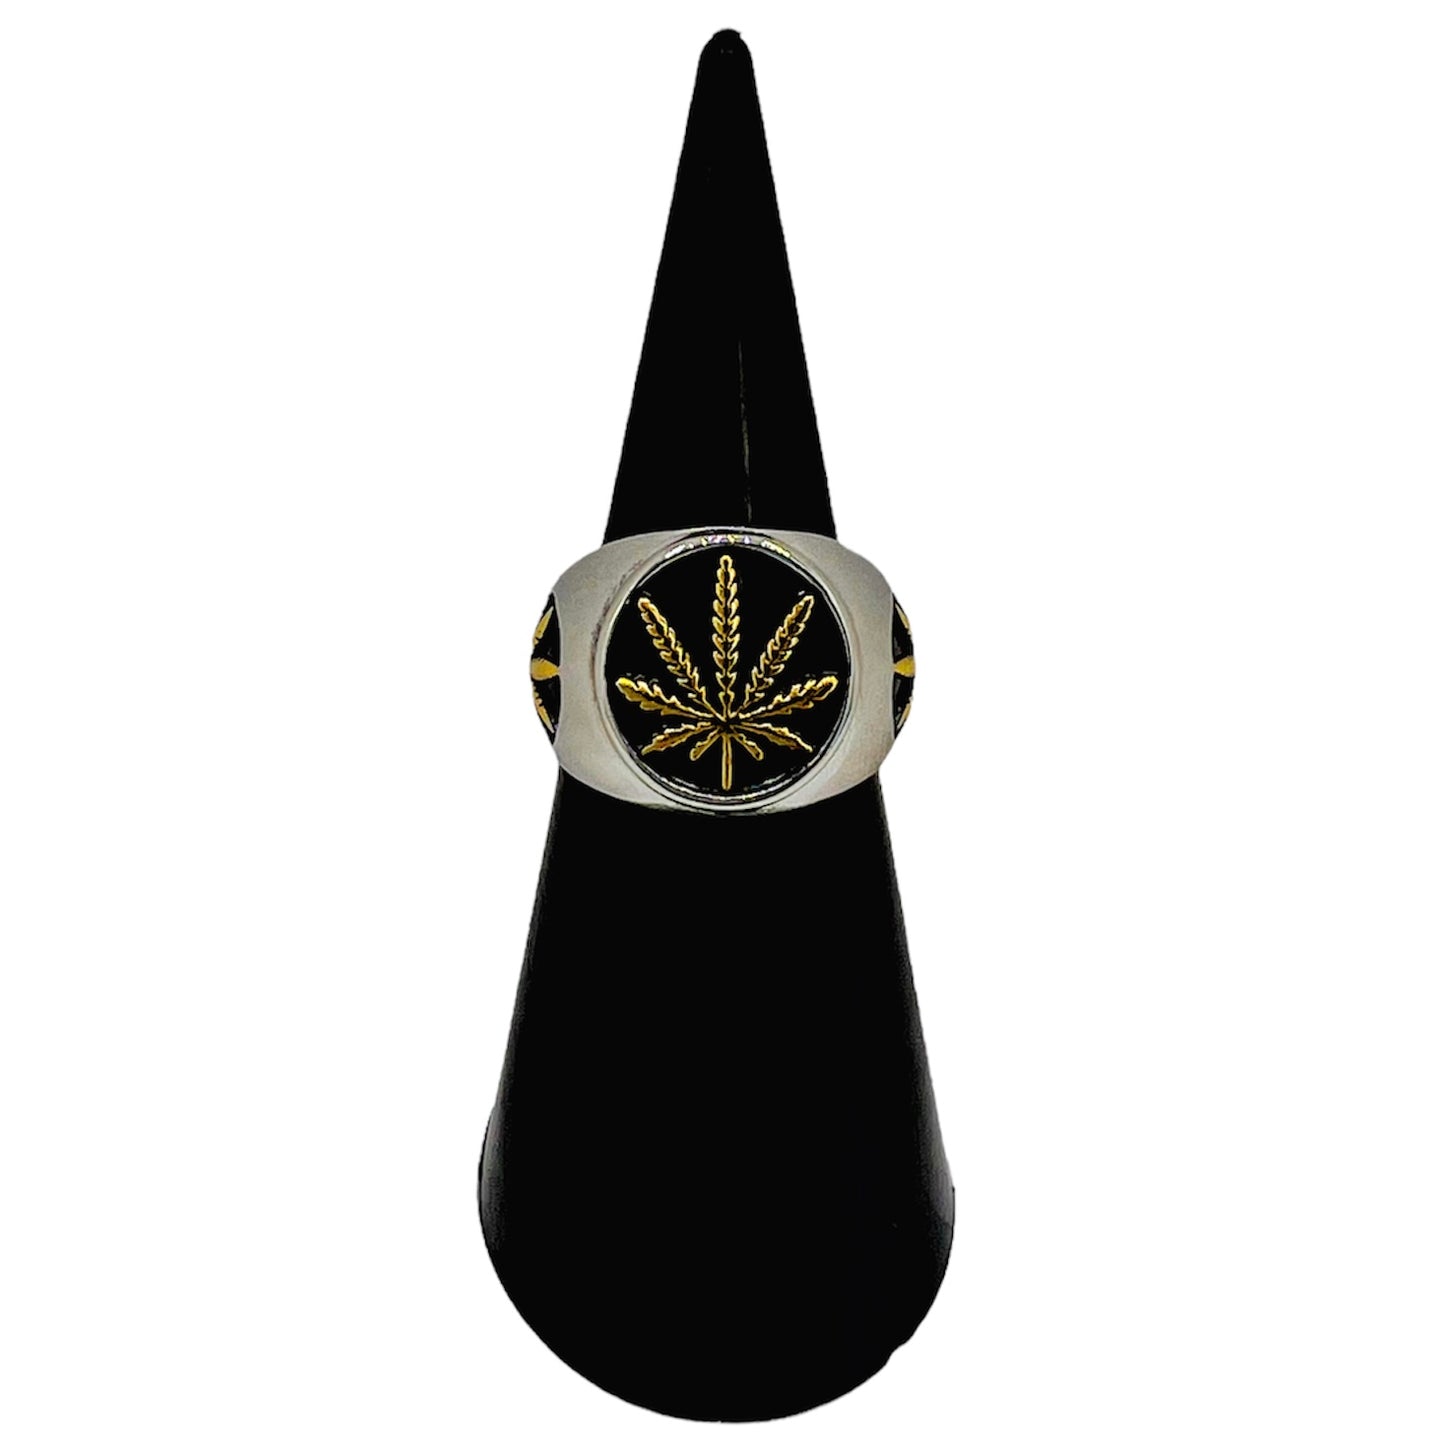 R-38 Stainless Steel Anillo con Hoja de Marihuana/ Marijuana Leaf Ring, Color: Silver,Gold,Black, Seleccione el Size en la Parte de Abajo donde dice Size